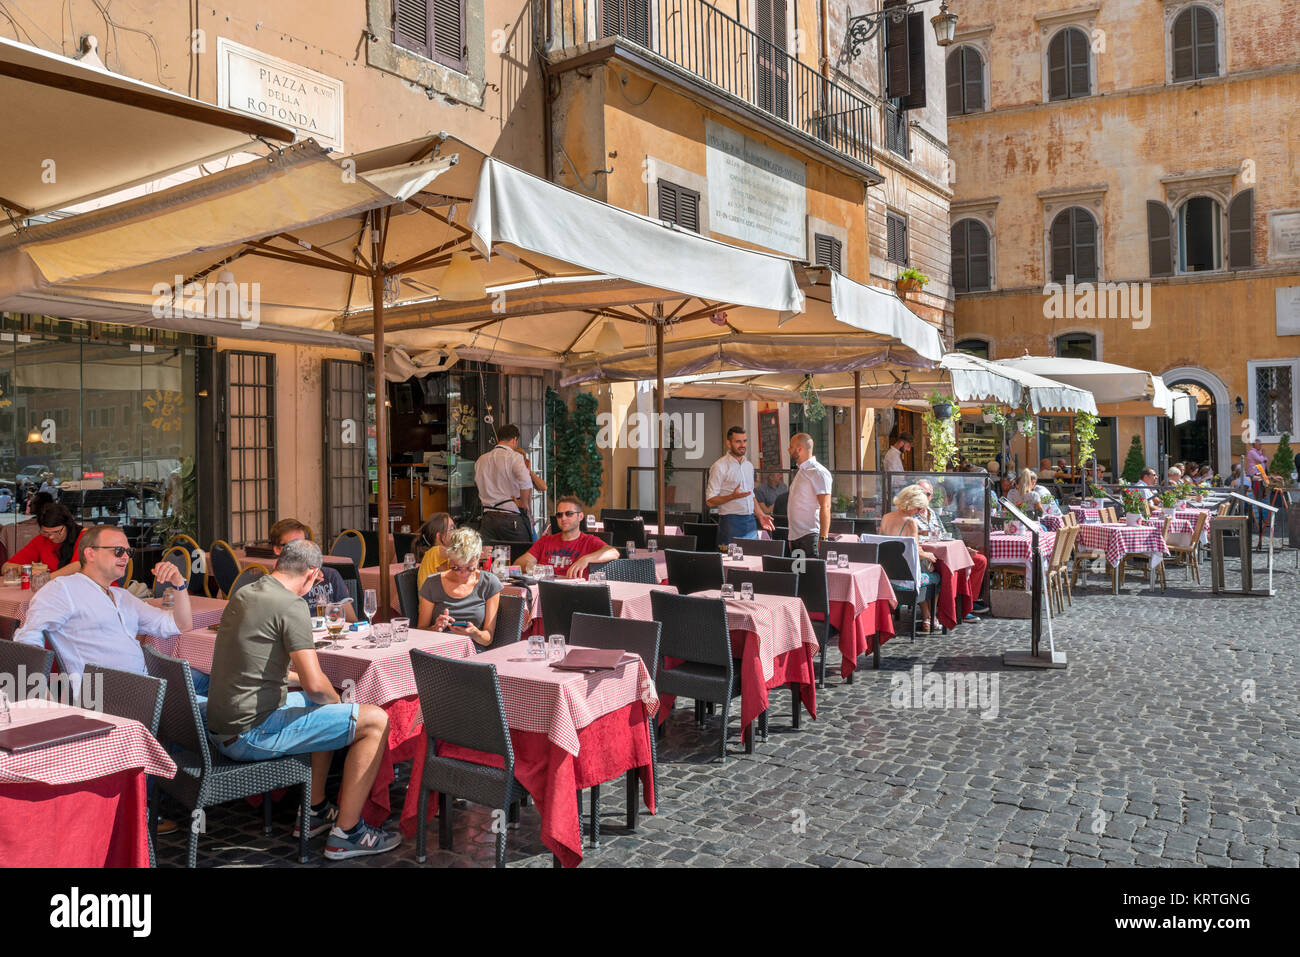 Le restaurant-terrasse sur la Piazza della Rotonda dans le centro storico, Rome, Italie Banque D'Images